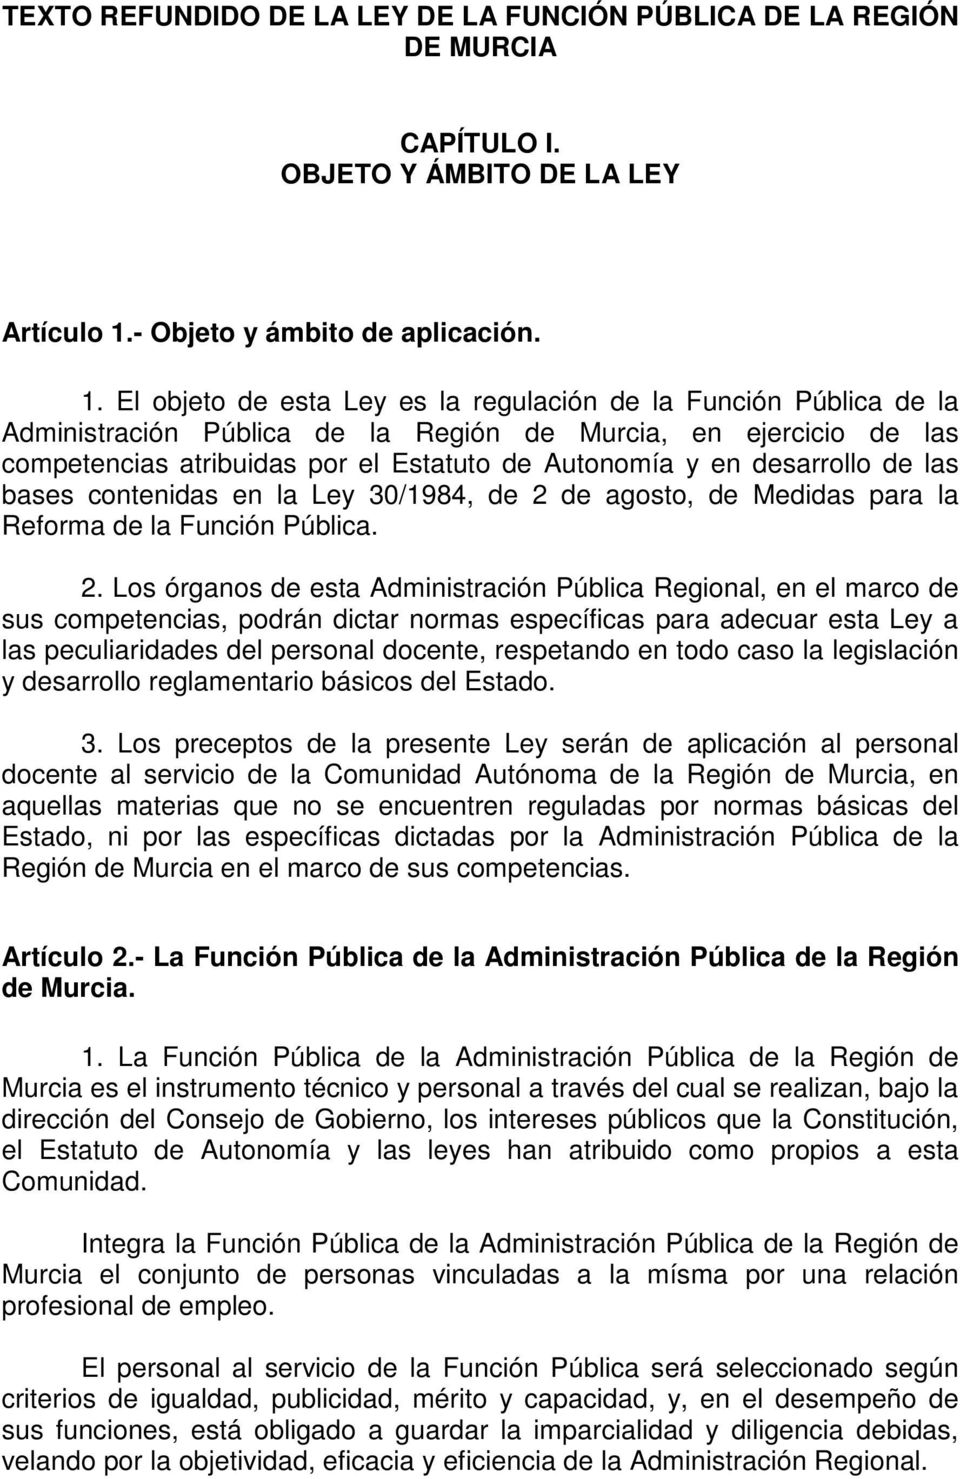 El objeto de esta Ley es la regulación de la Función Pública de la Administración Pública de la Región de Murcia, en ejercicio de las competencias atribuidas por el Estatuto de Autonomía y en